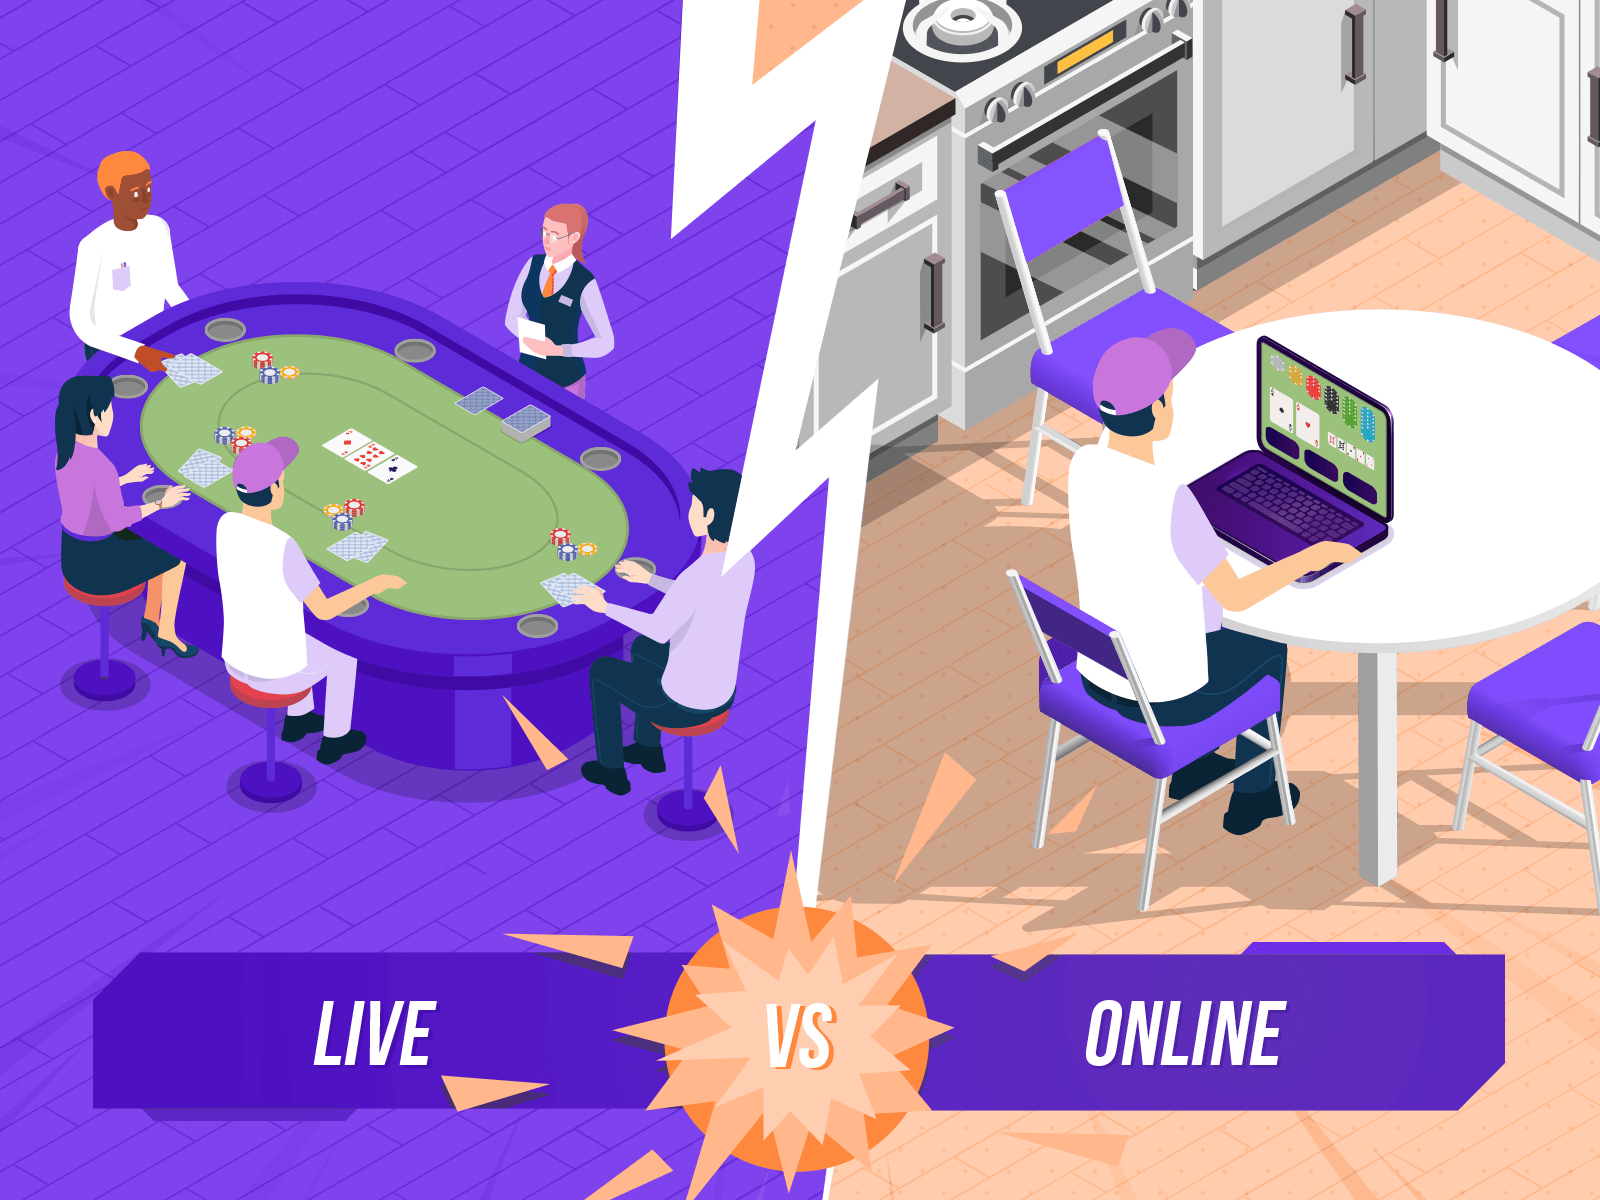 Was ist der emotionale Unterschied zwischen dem Online- und dem Live-Pokerspiel?